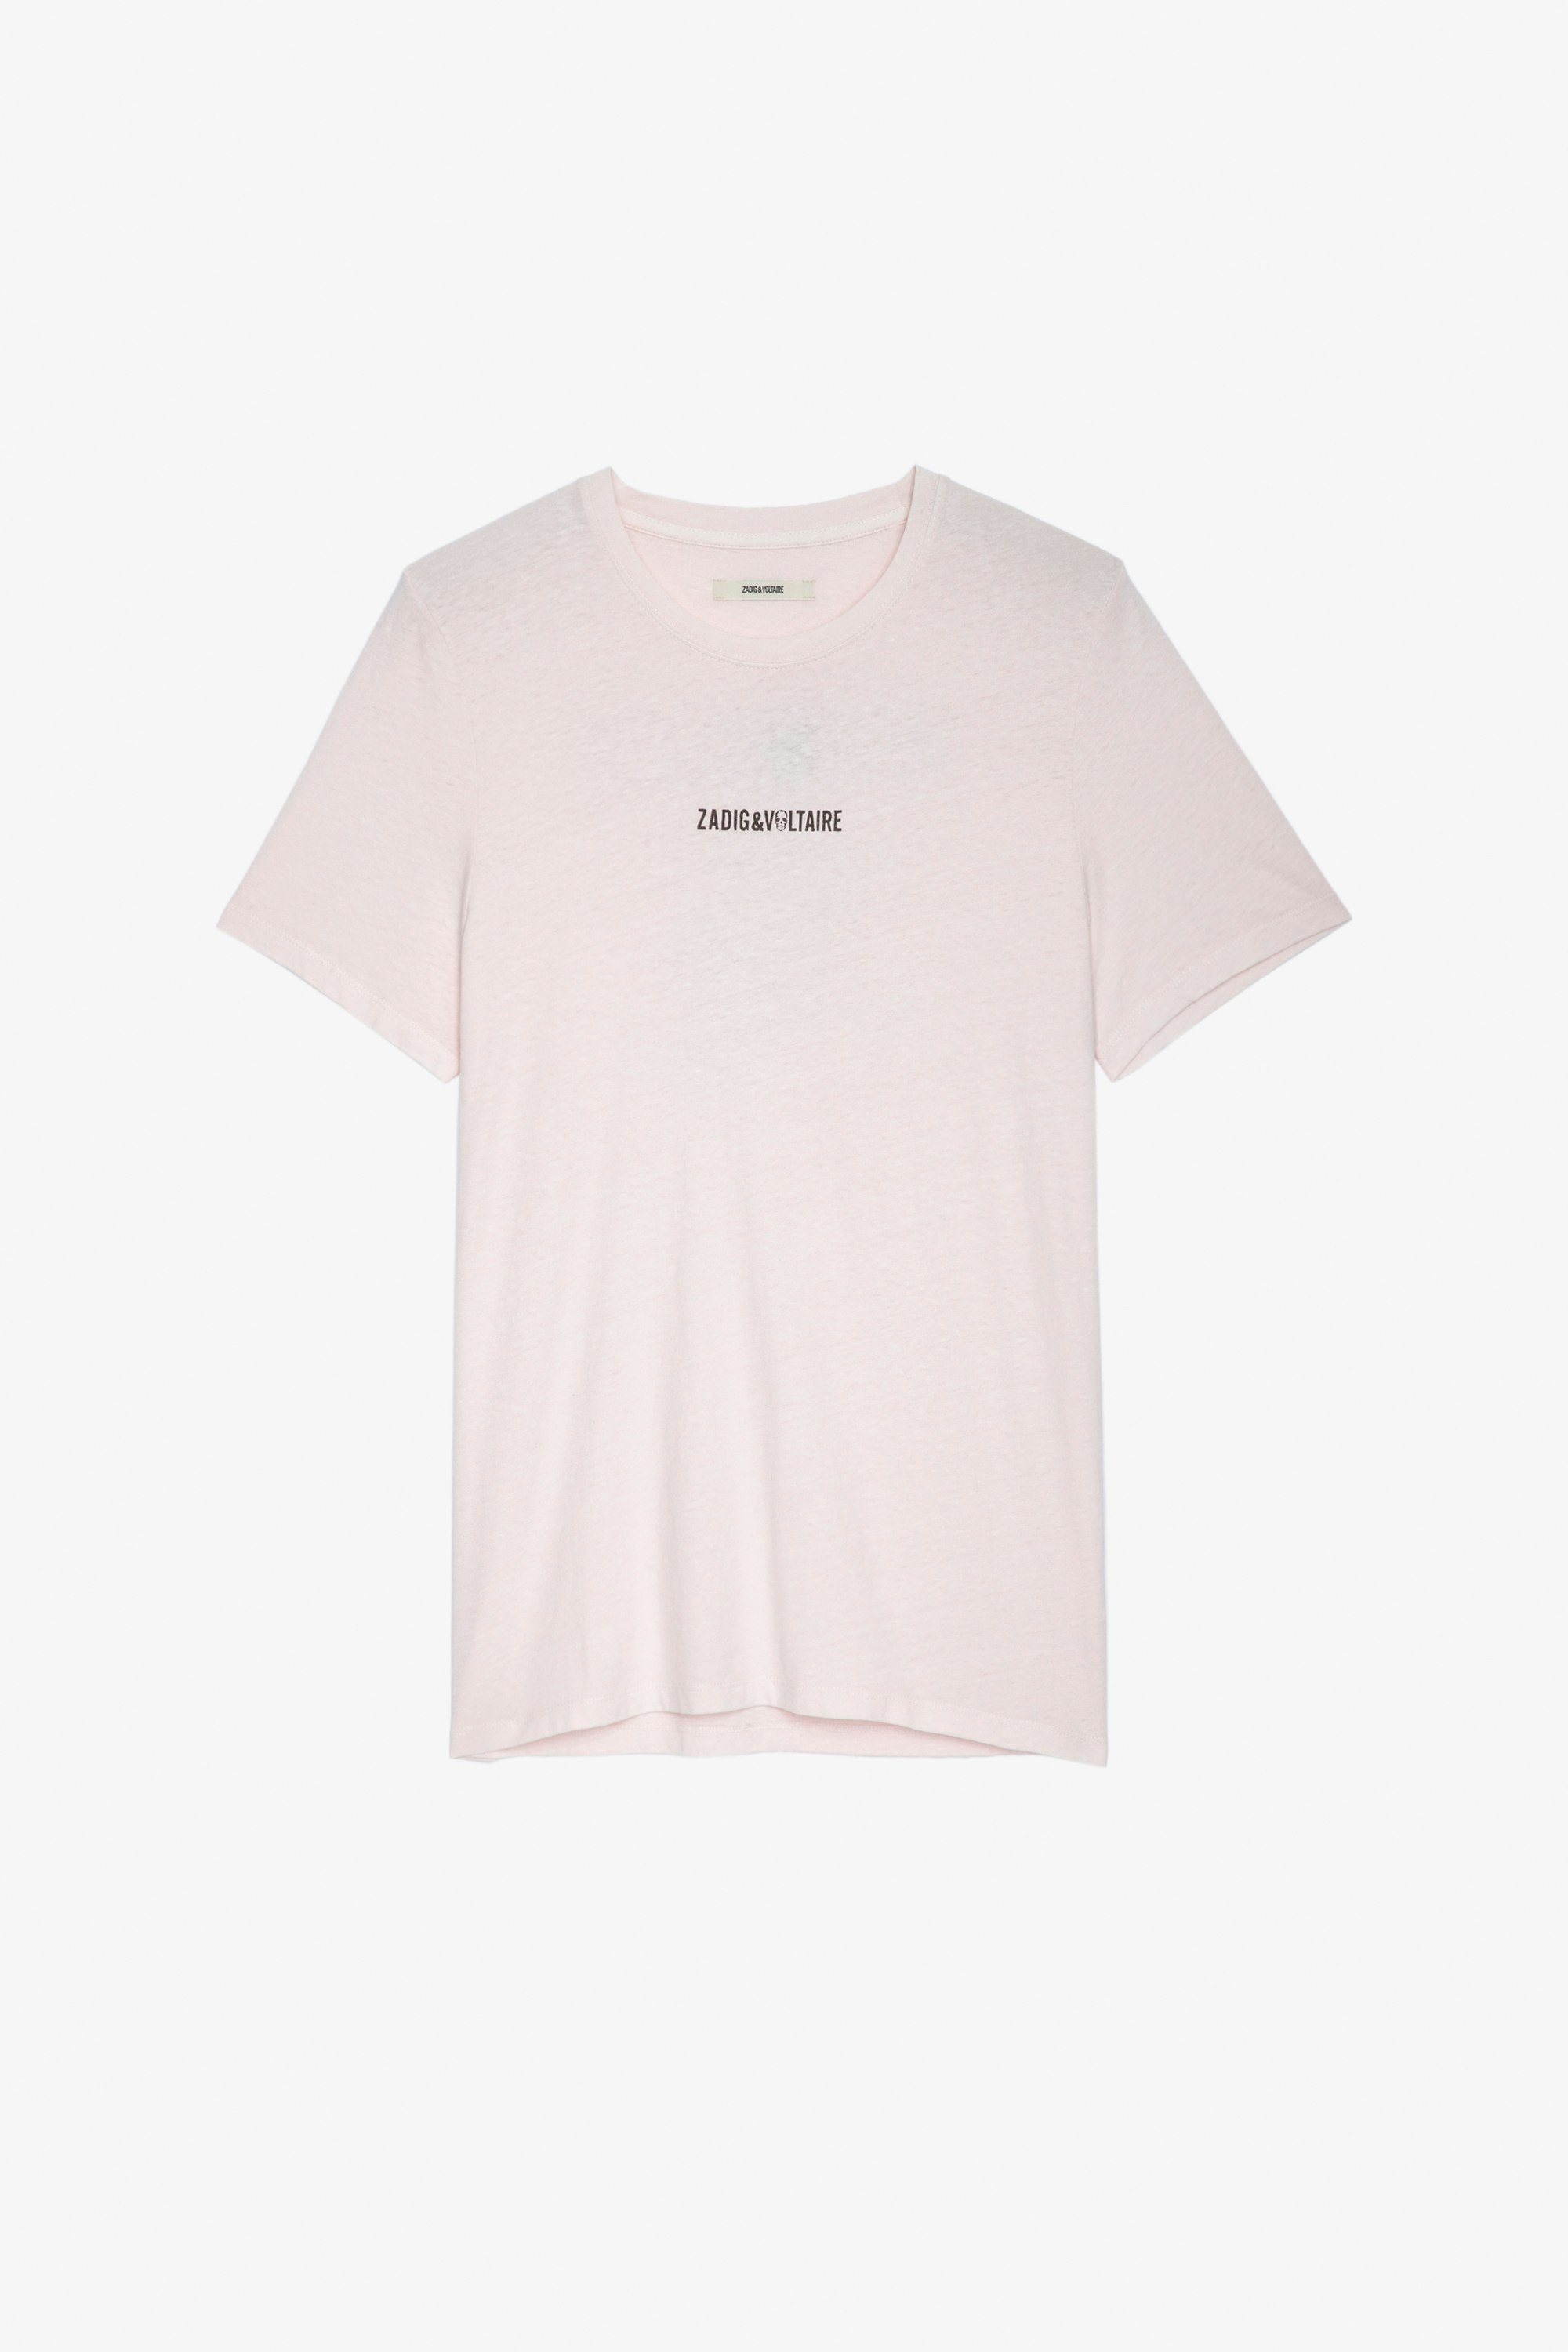 Ted Ｔシャツ ペールピンク コットンTシャツ フロントにZVのシグネチャー、バックに 「Hédoniste」のメッセージ メンズ